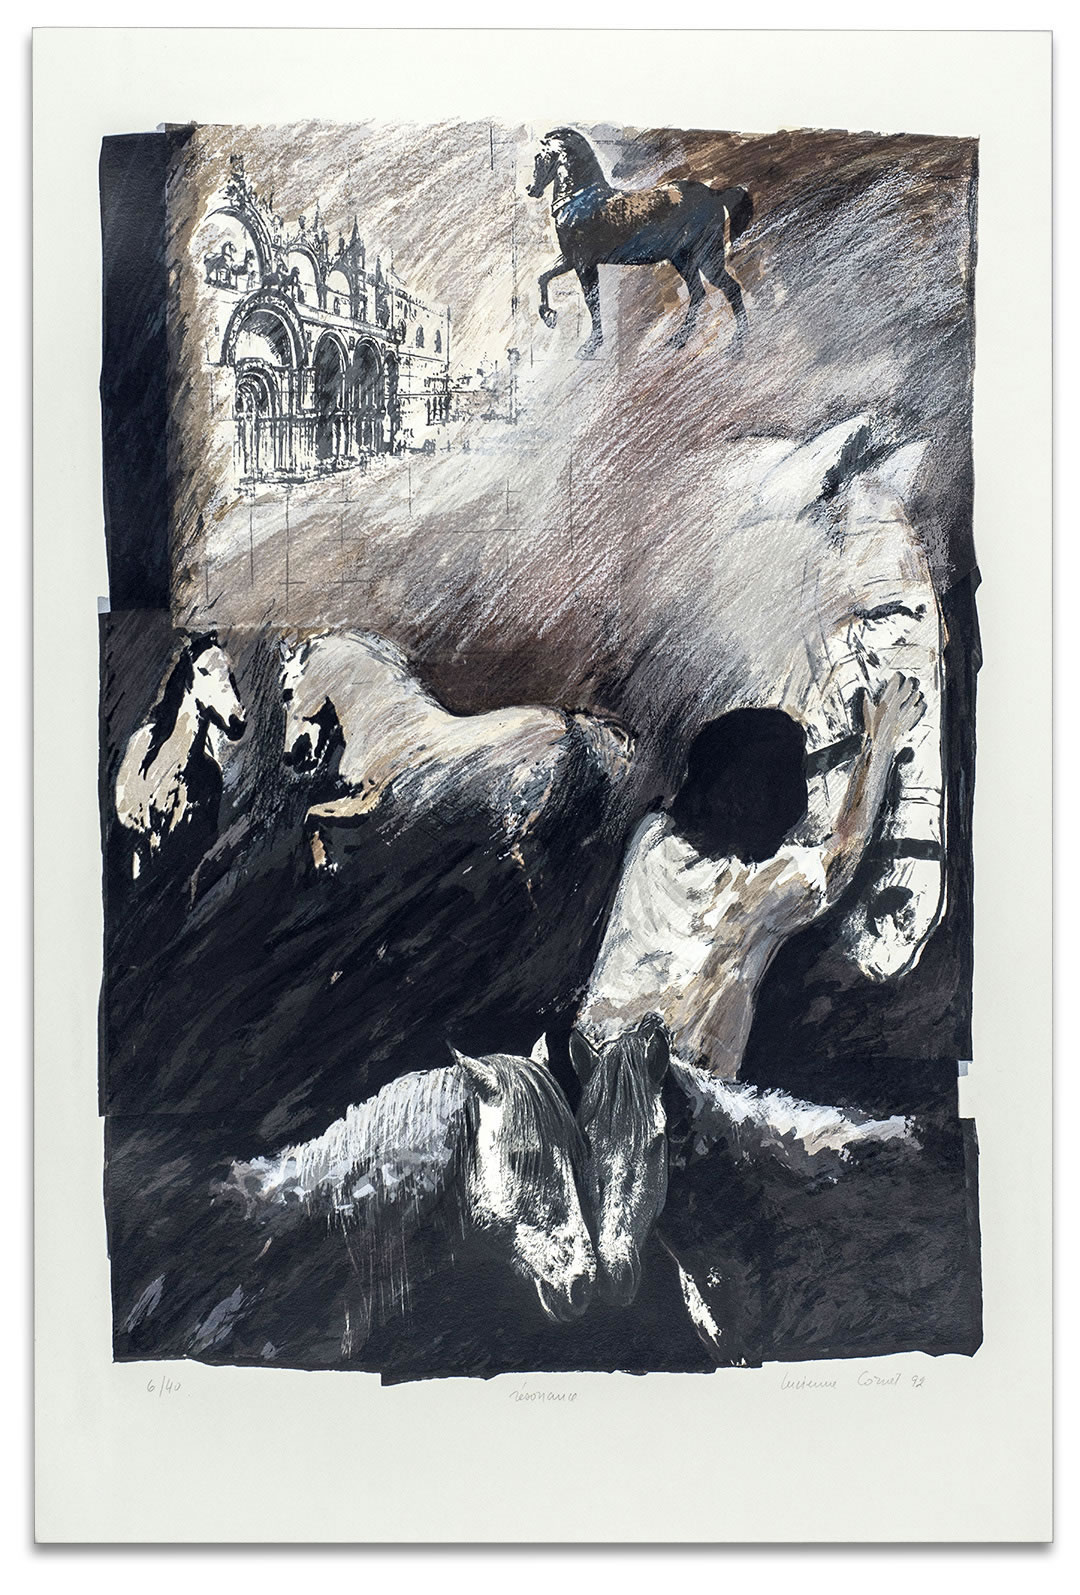 Estampe de Lucienne Cornet / Sérigraphie couleurs sur papier Stonehenge / 56 x 76 cm